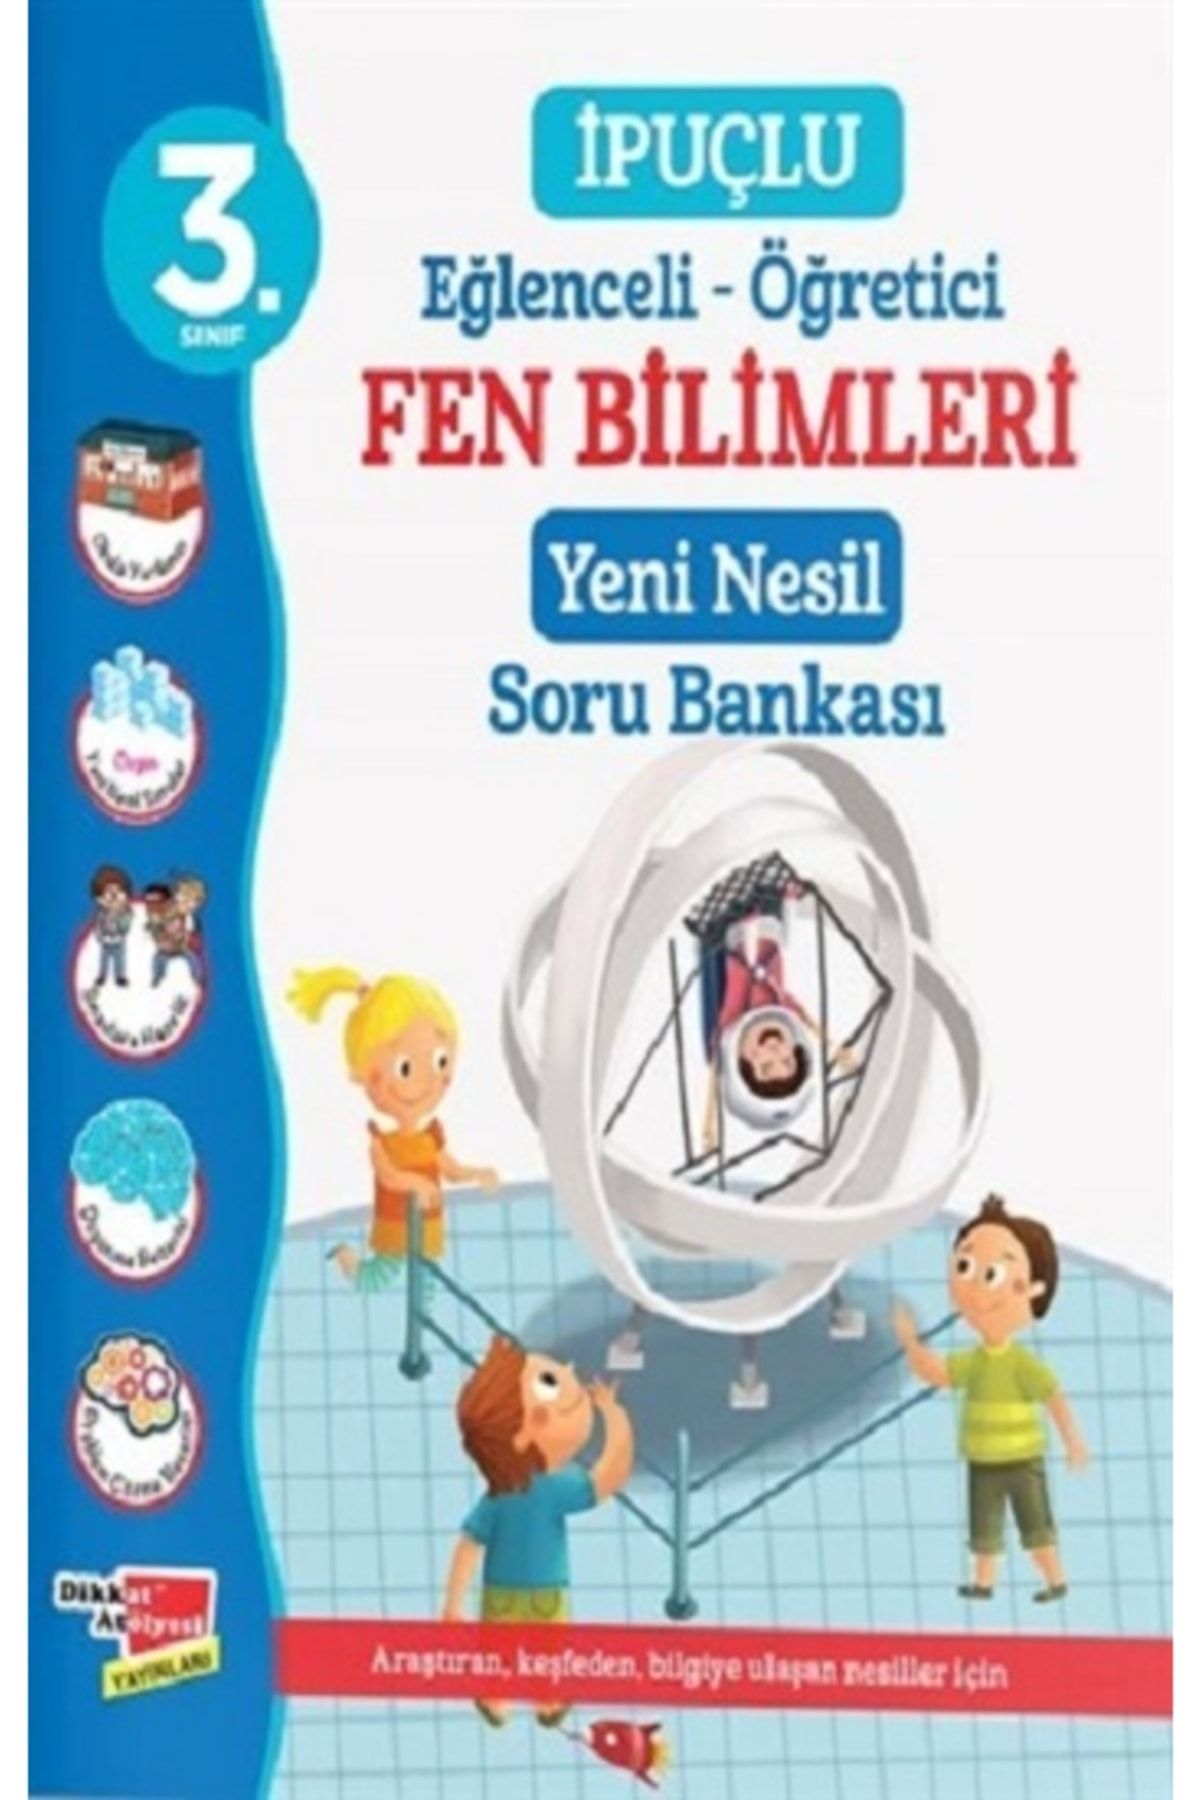 Dikkat Atölyesi Yayınları 3. Sınıf Eğlenceli - Öğretici Ipuçlu Fen Bilimleri Yeni Nesil Sor